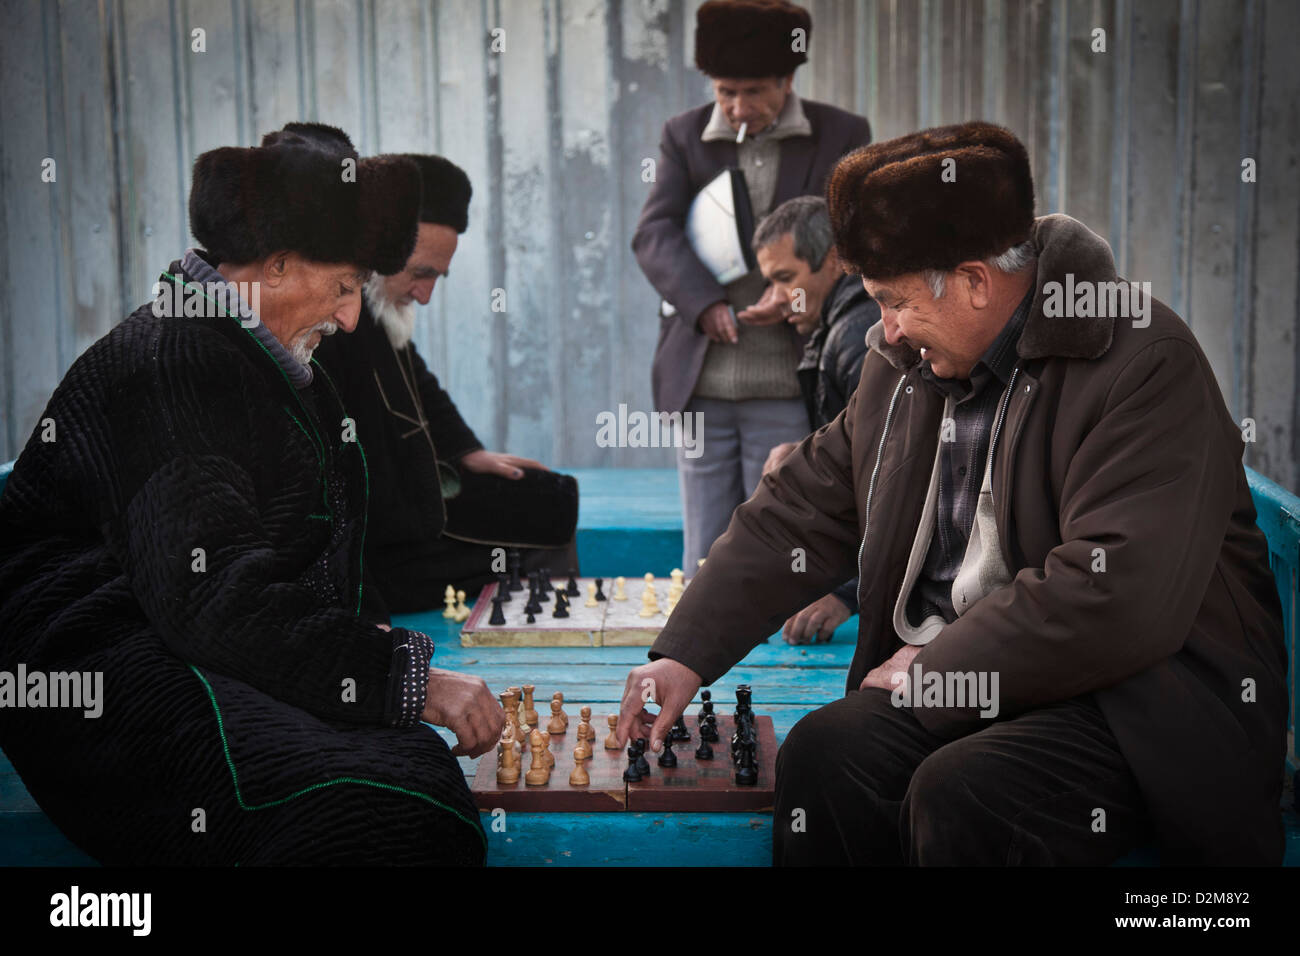 Vieux et retraités ouzbek tadjik jouer aux échecs dans un parc près de Hissor bazar, au Tadjikistan. Banque D'Images